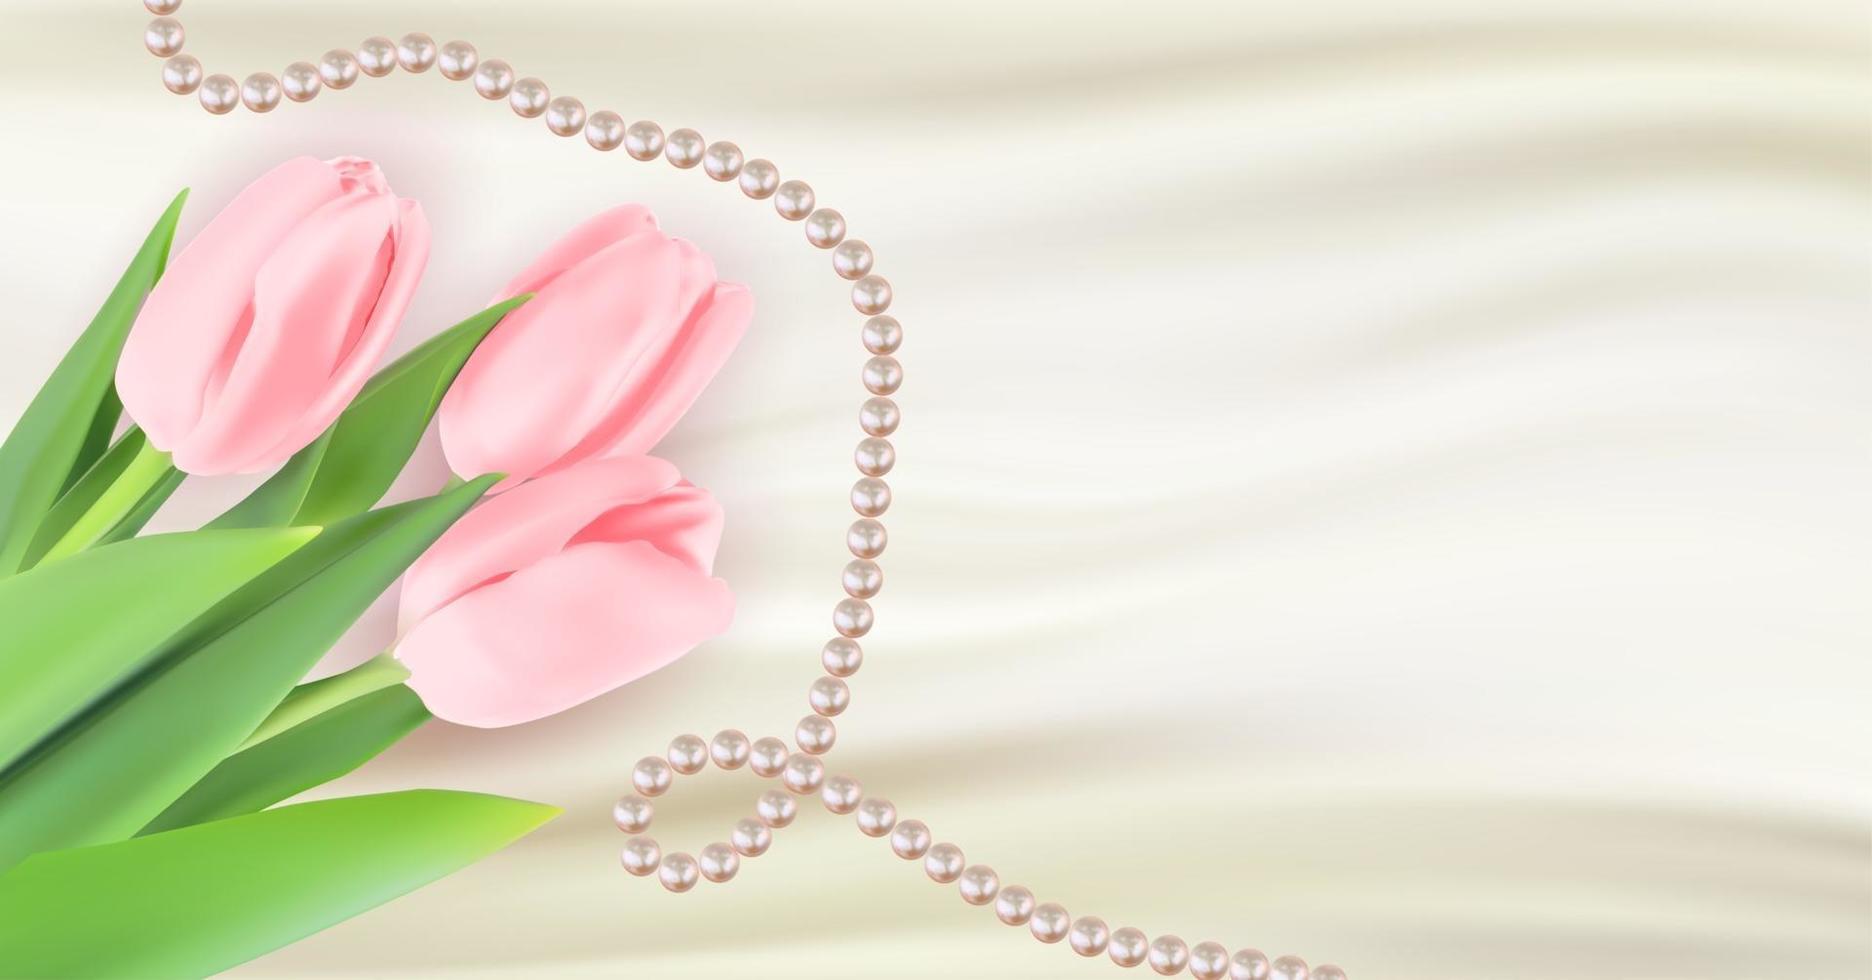 vit siden glad kvinnors dag semester gratulationen bakgrund med tulpan blommor och pärlor. vektor illustration